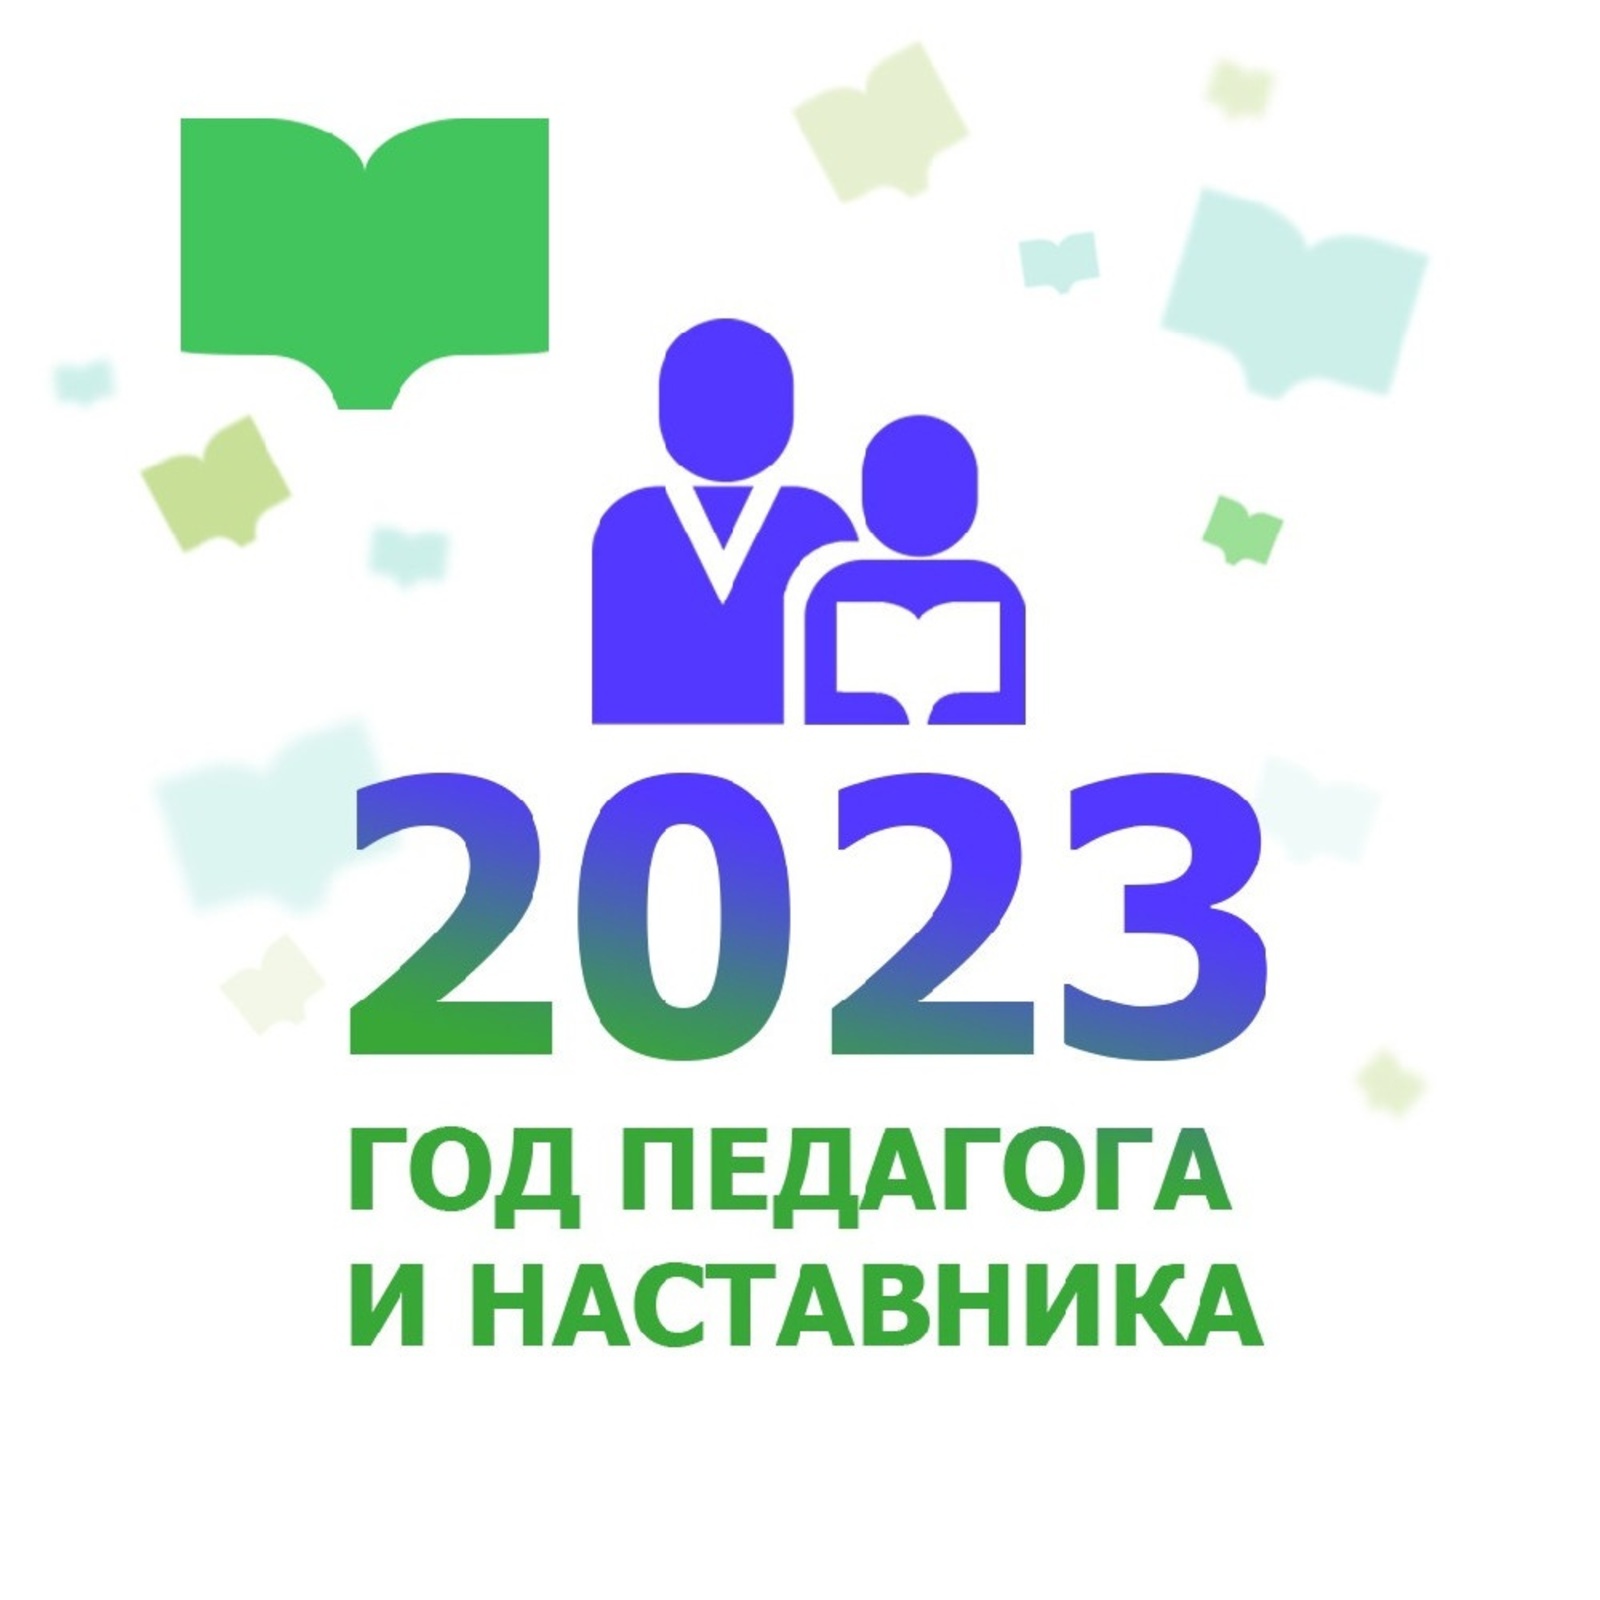 2023 – Уҡытыусы һәм остаз йылы